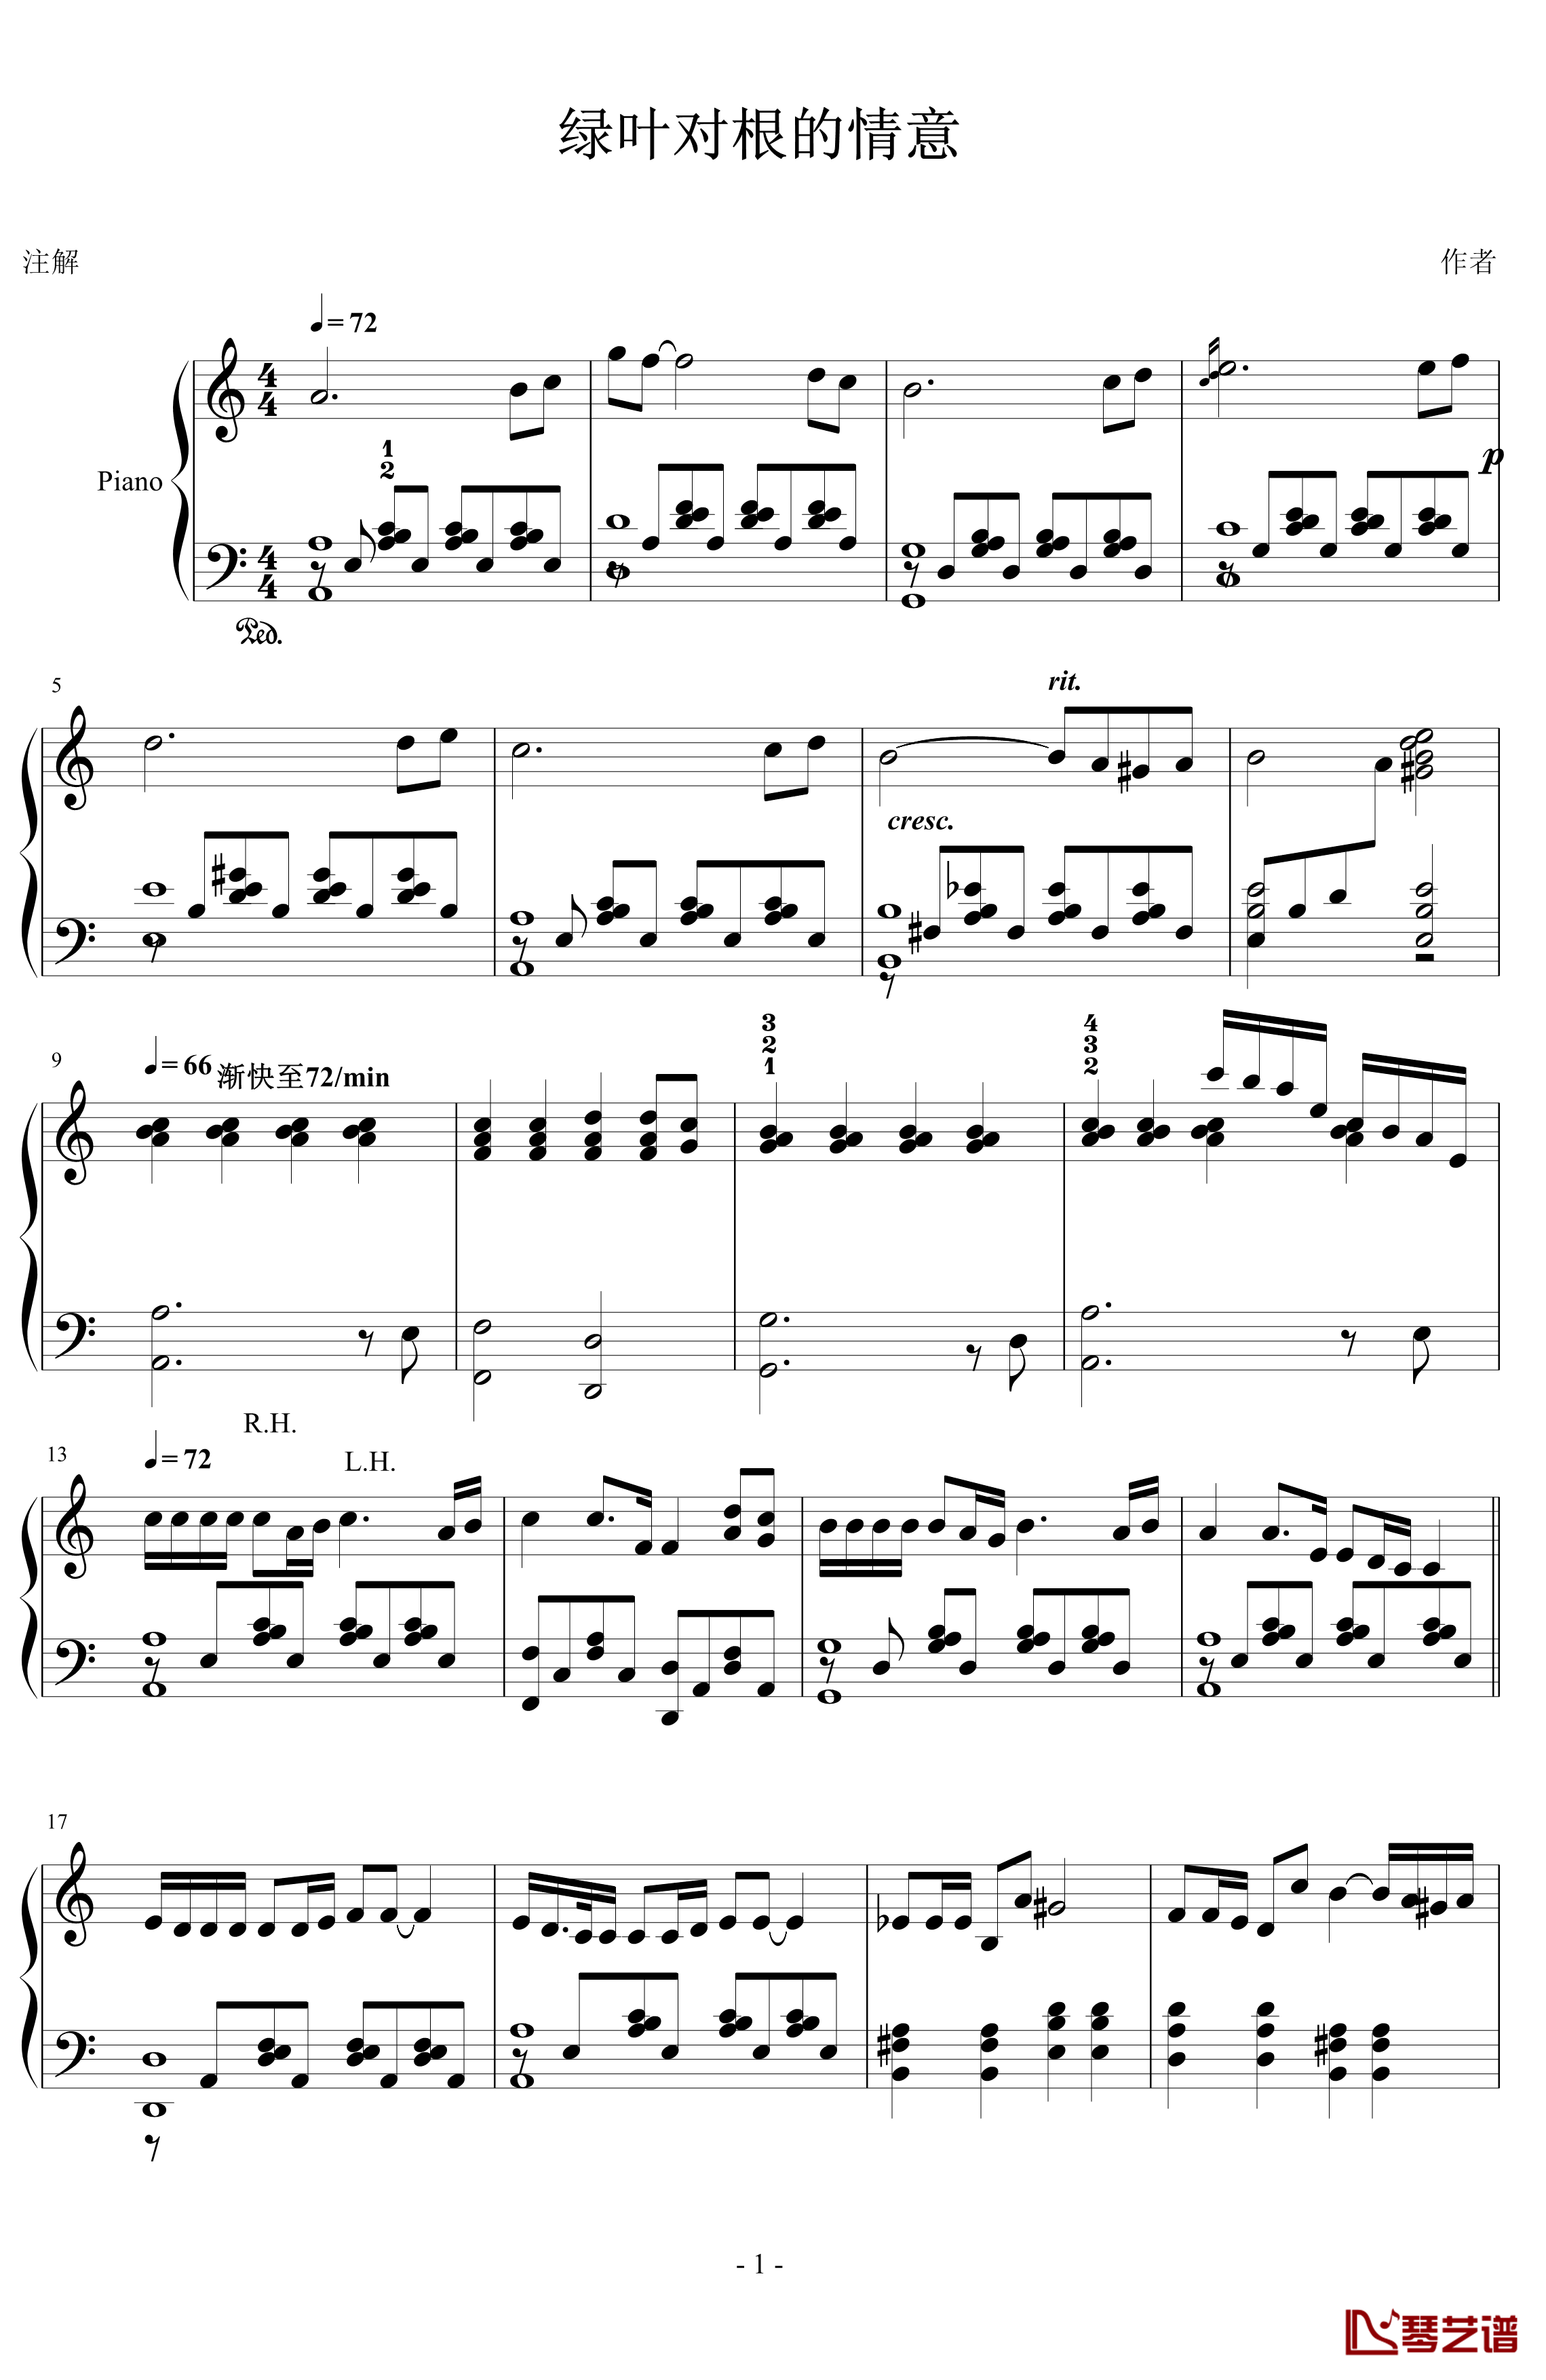 绿叶对根的情意钢琴谱-谷建芬1